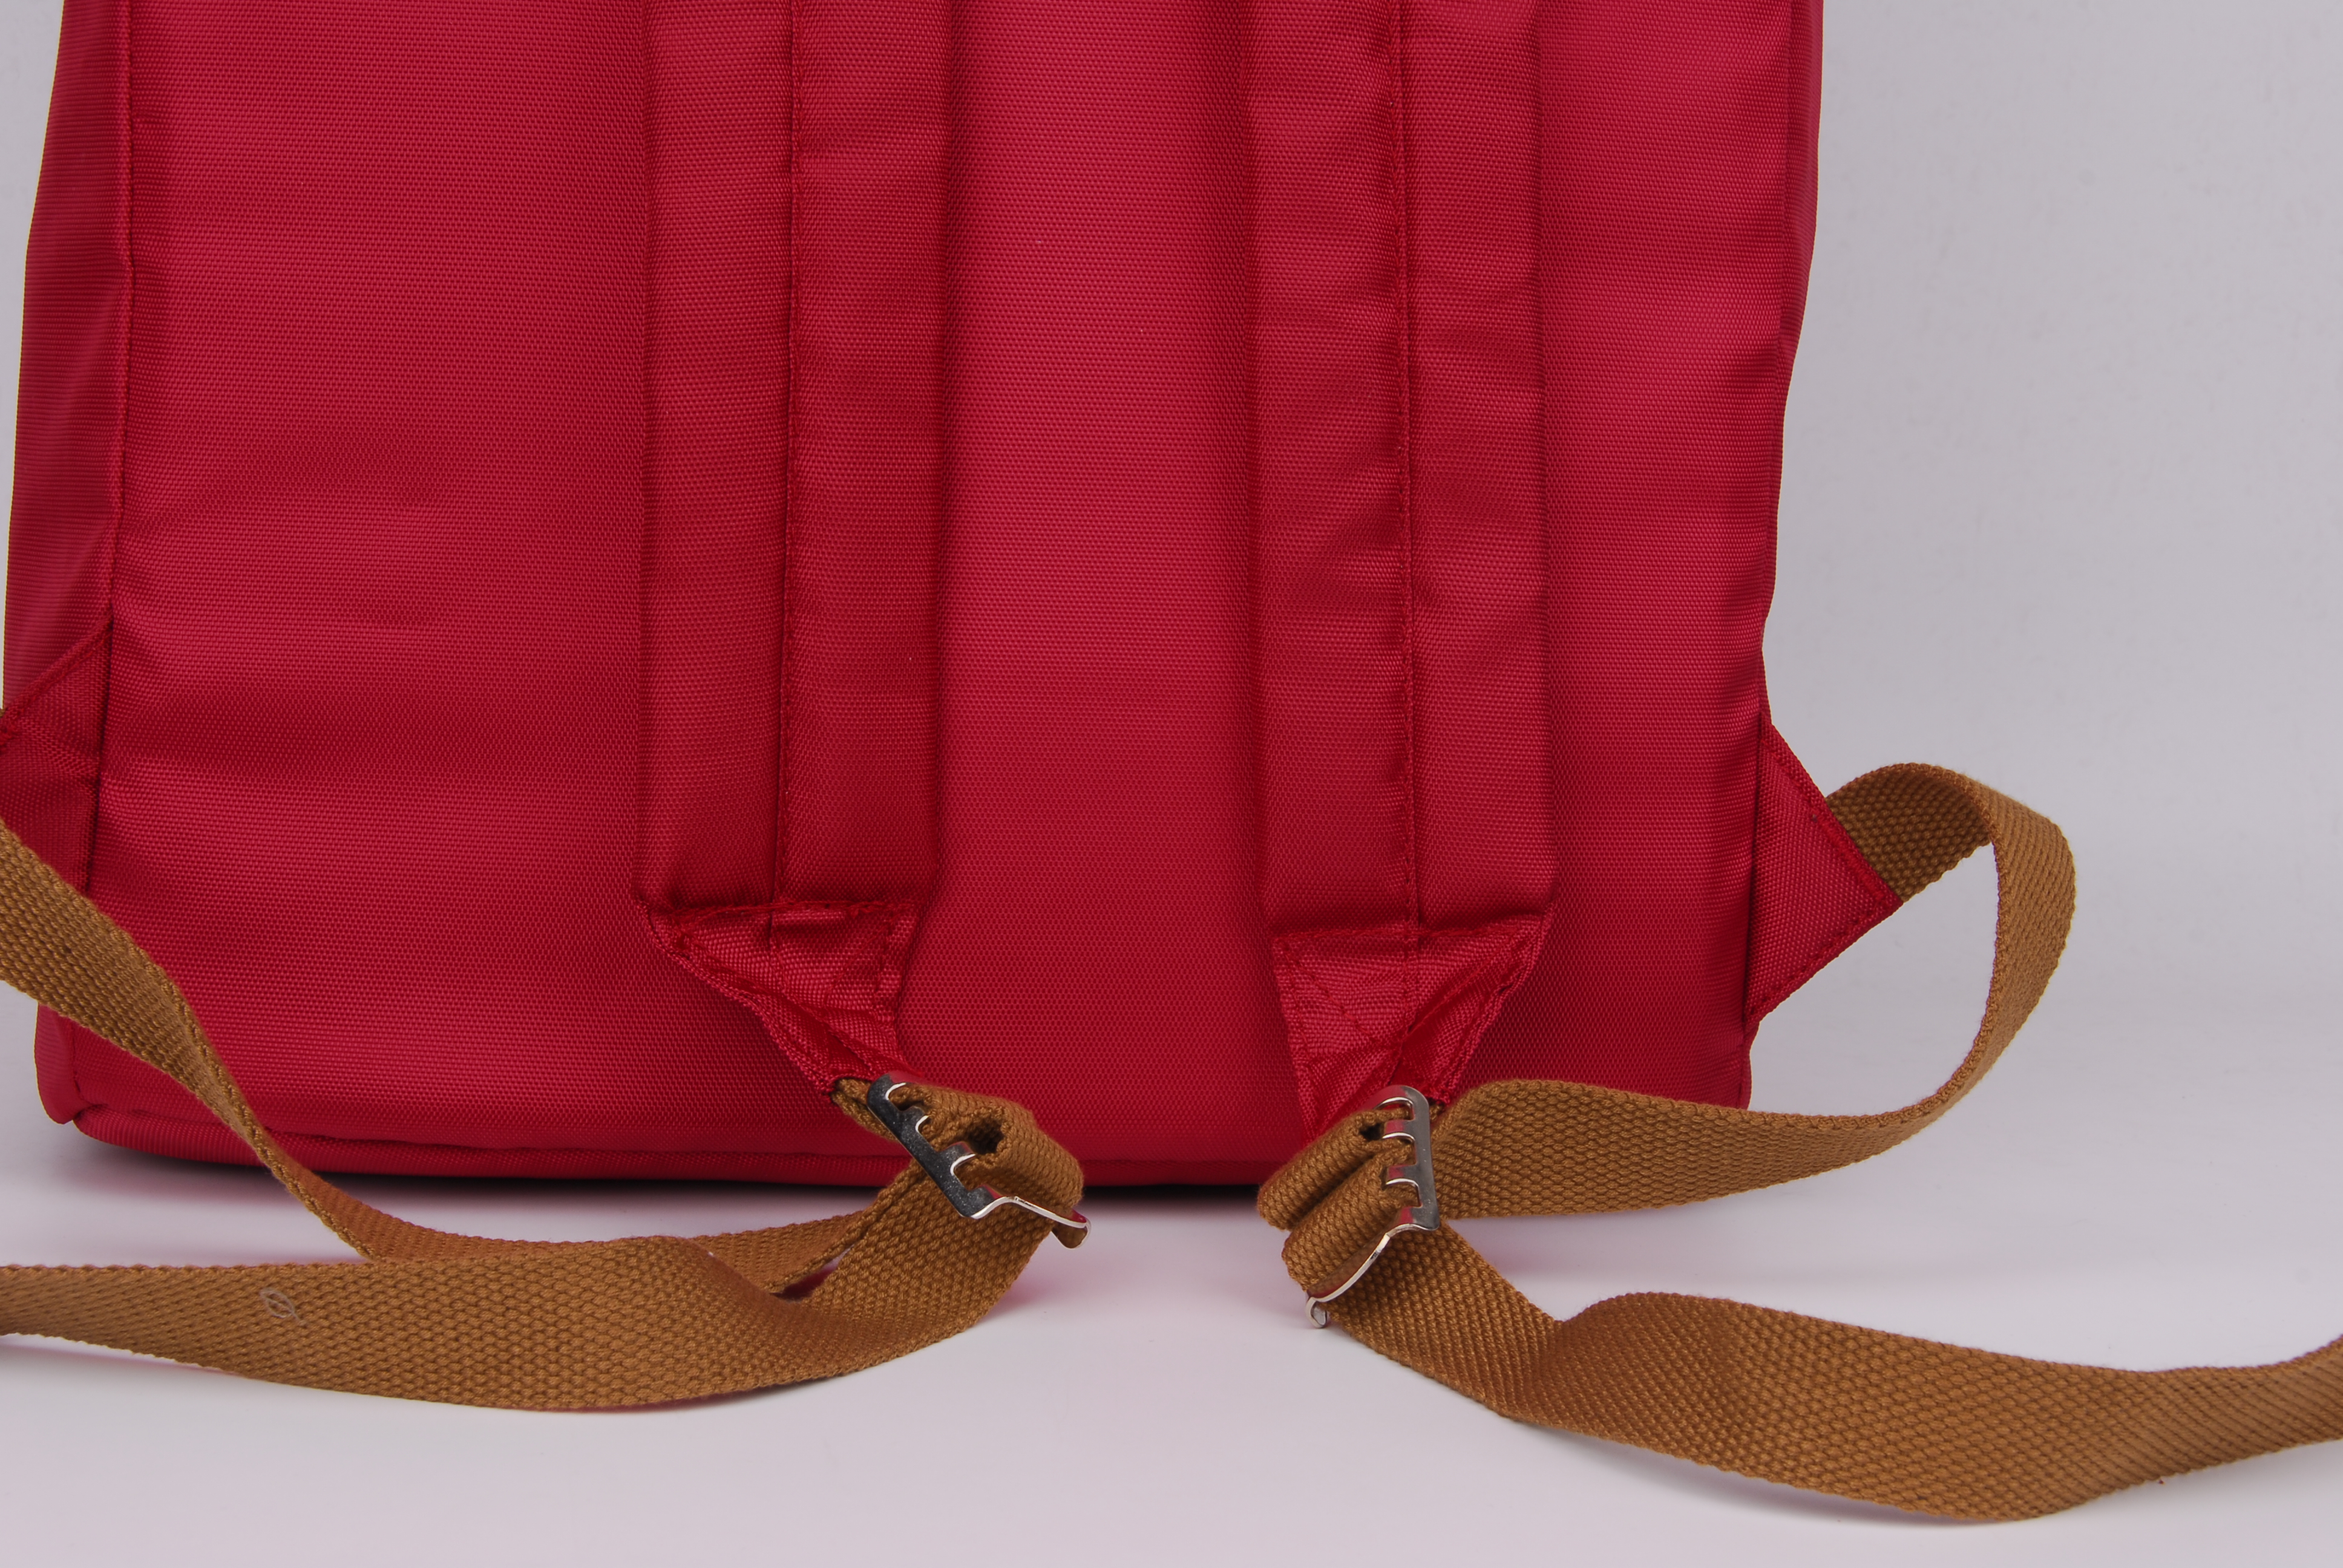 Women nylon backpack